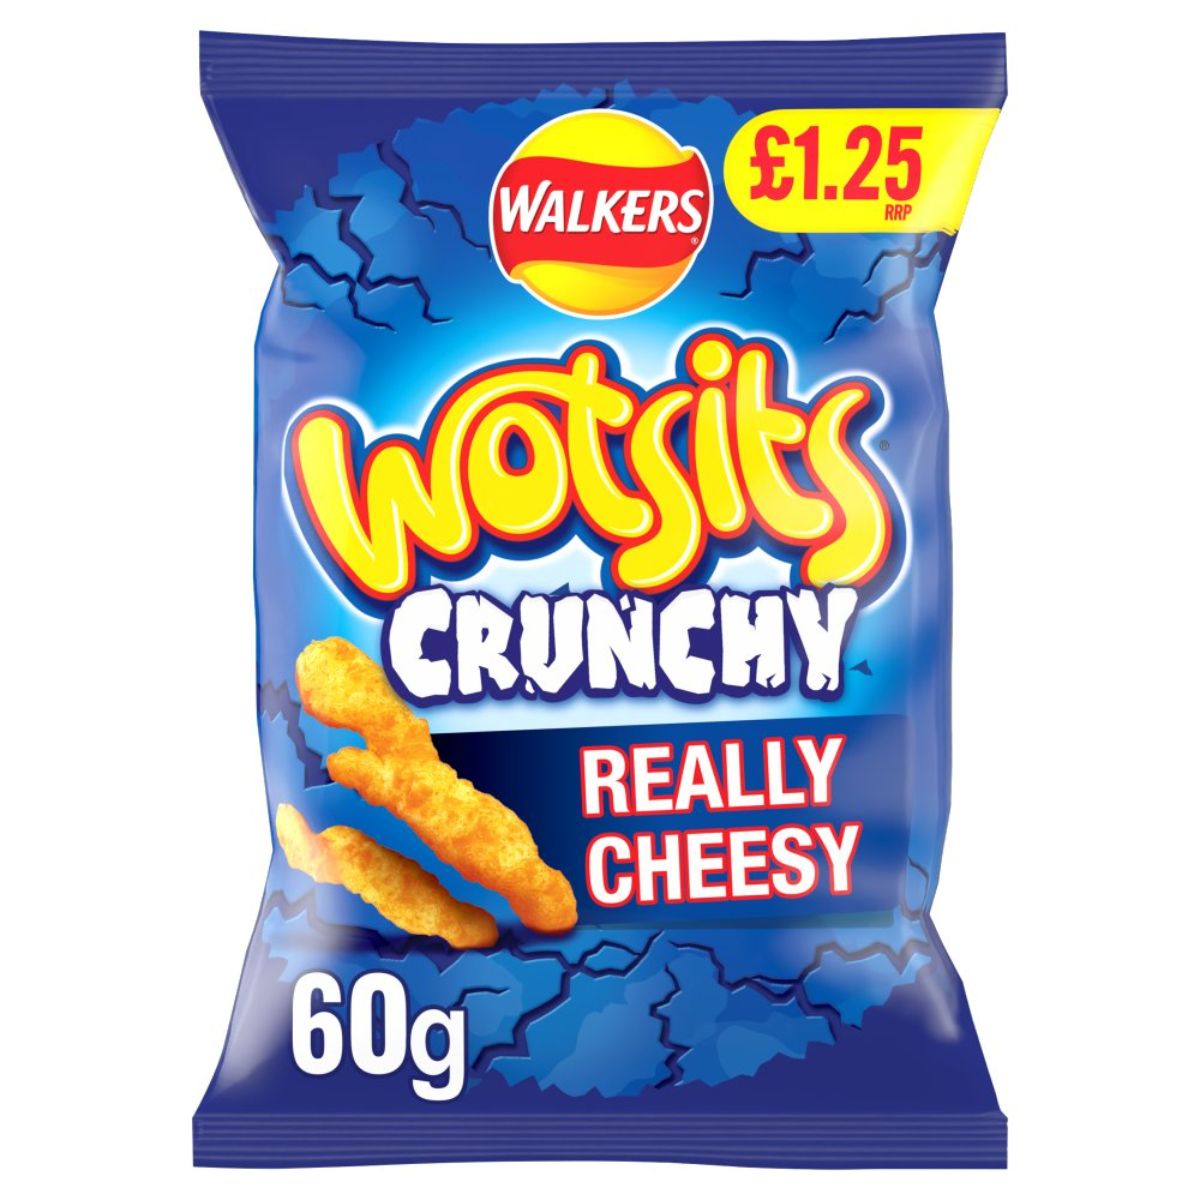 Walkers - Wotsits Crunchy Really Cheesy - 60g are really cheesy.